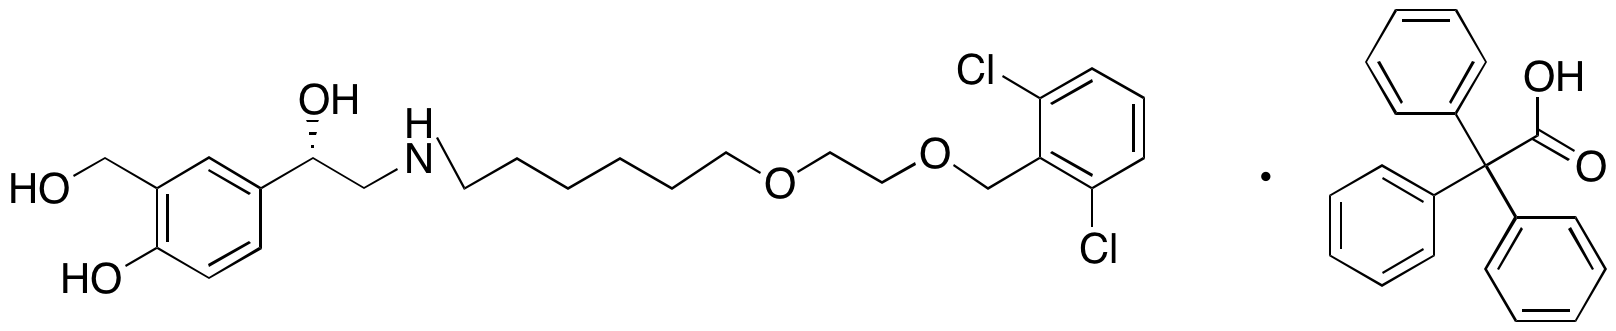 (S)-4-(2-((6-(2-((2,6-dichlorobenzyl)oxy)ethoxy)hexyl)amino)-1-hydroxyethyl)-2-(hydroxymethyl)phenol 2,2,2-Triphenylacetate